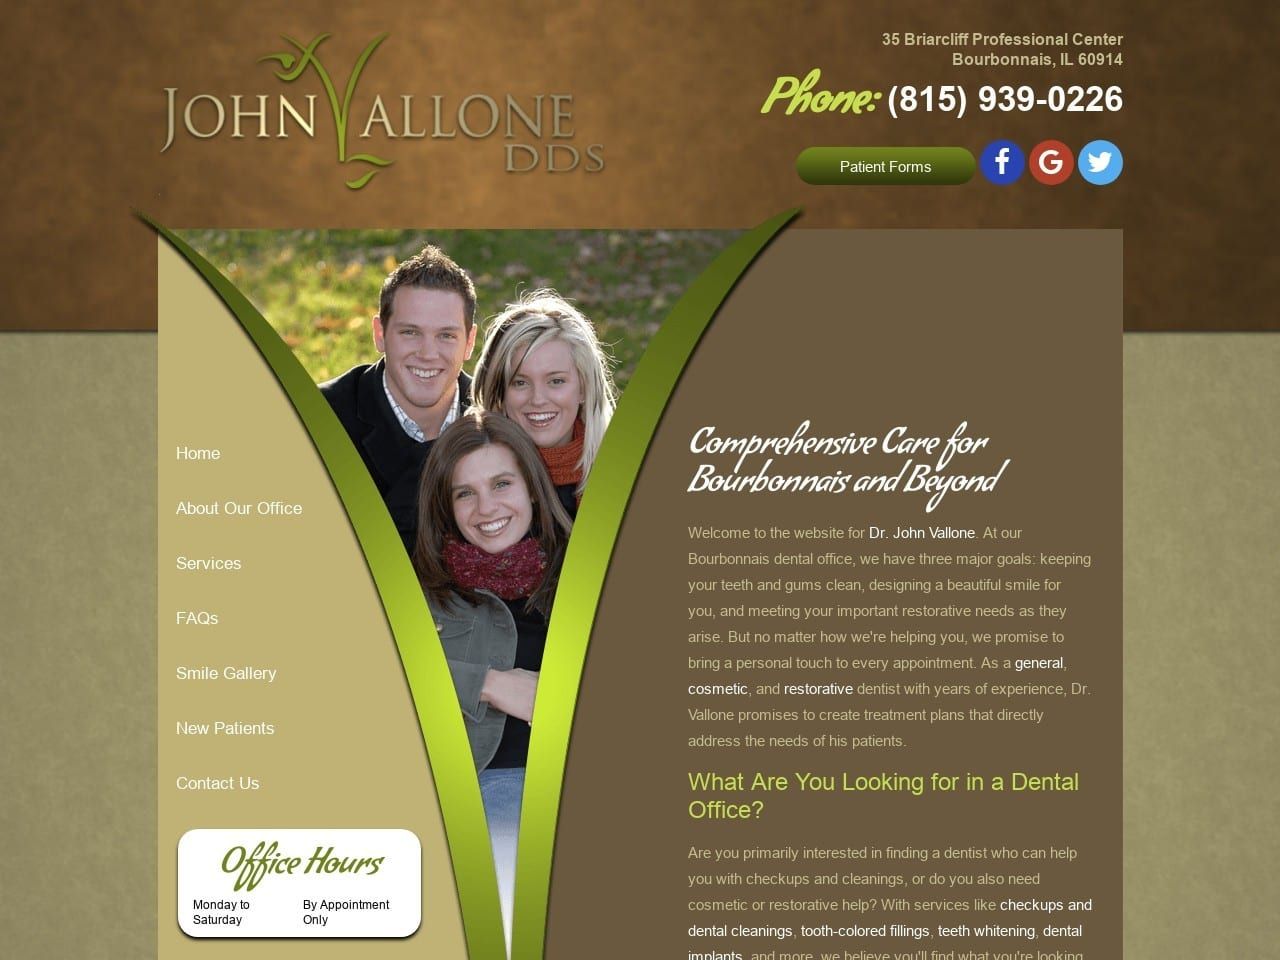 John Vallone DDS Website Screenshot from johnvallonedds.com